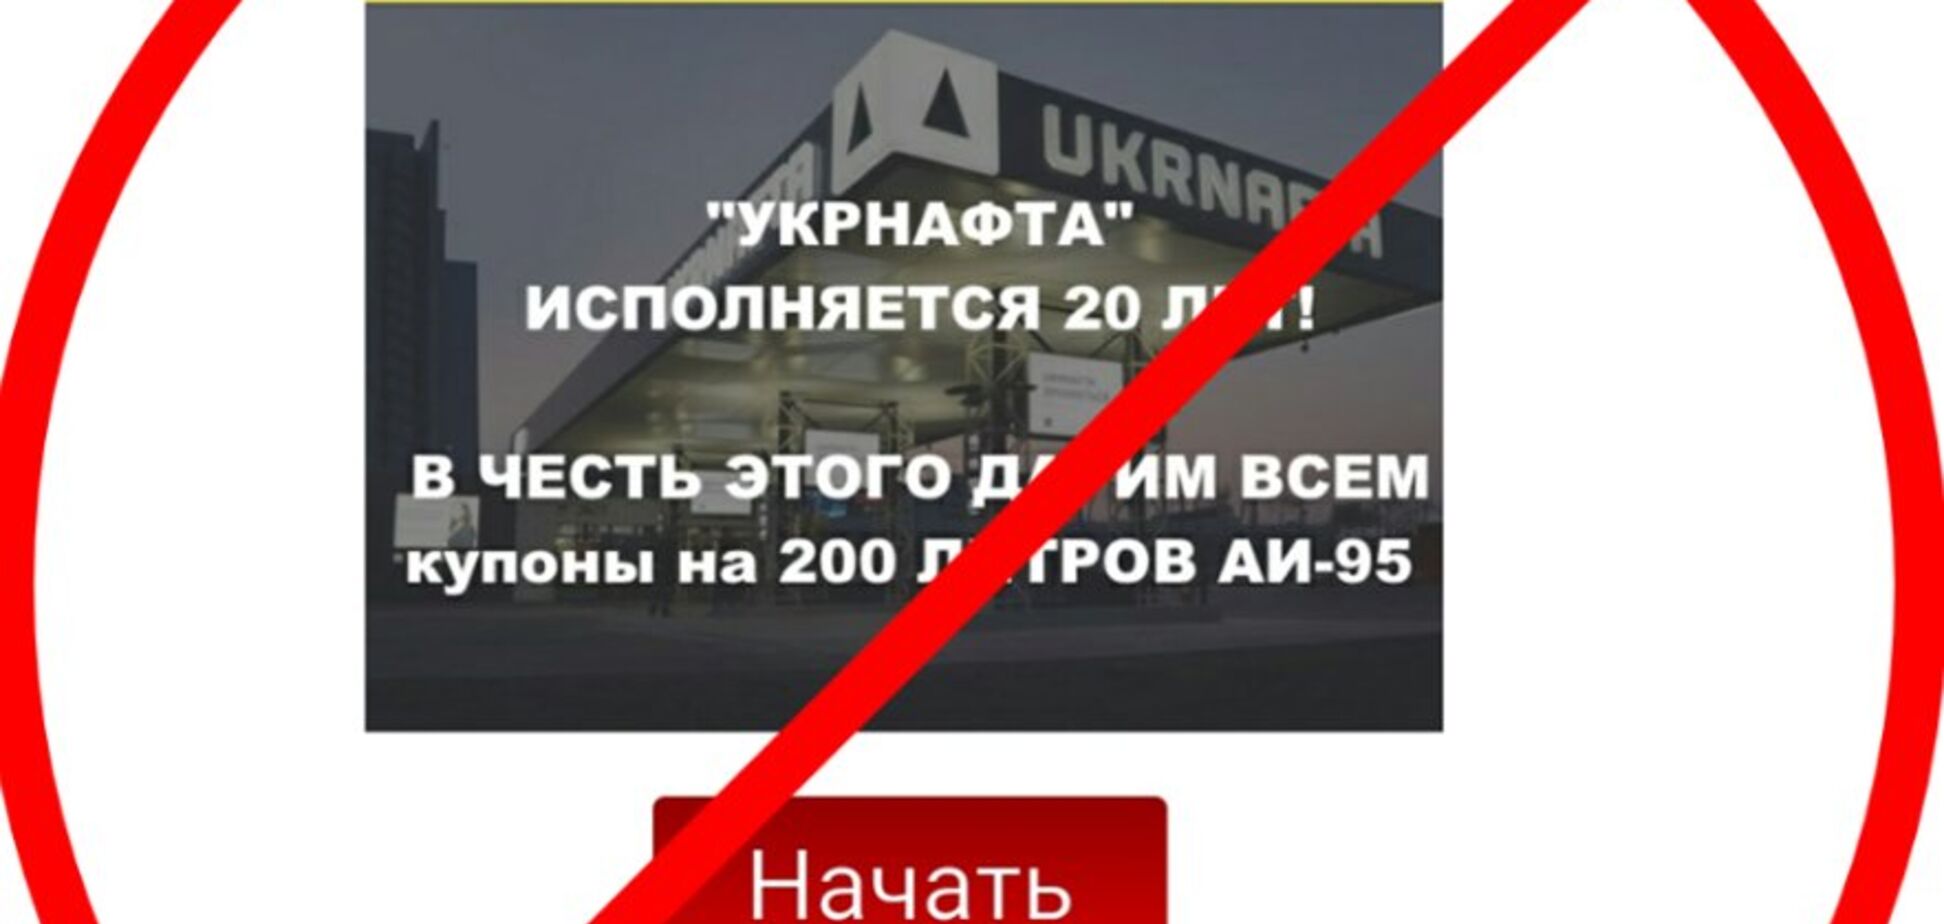 'Нафтогаз' предупредил украинцев о новой афере в сети